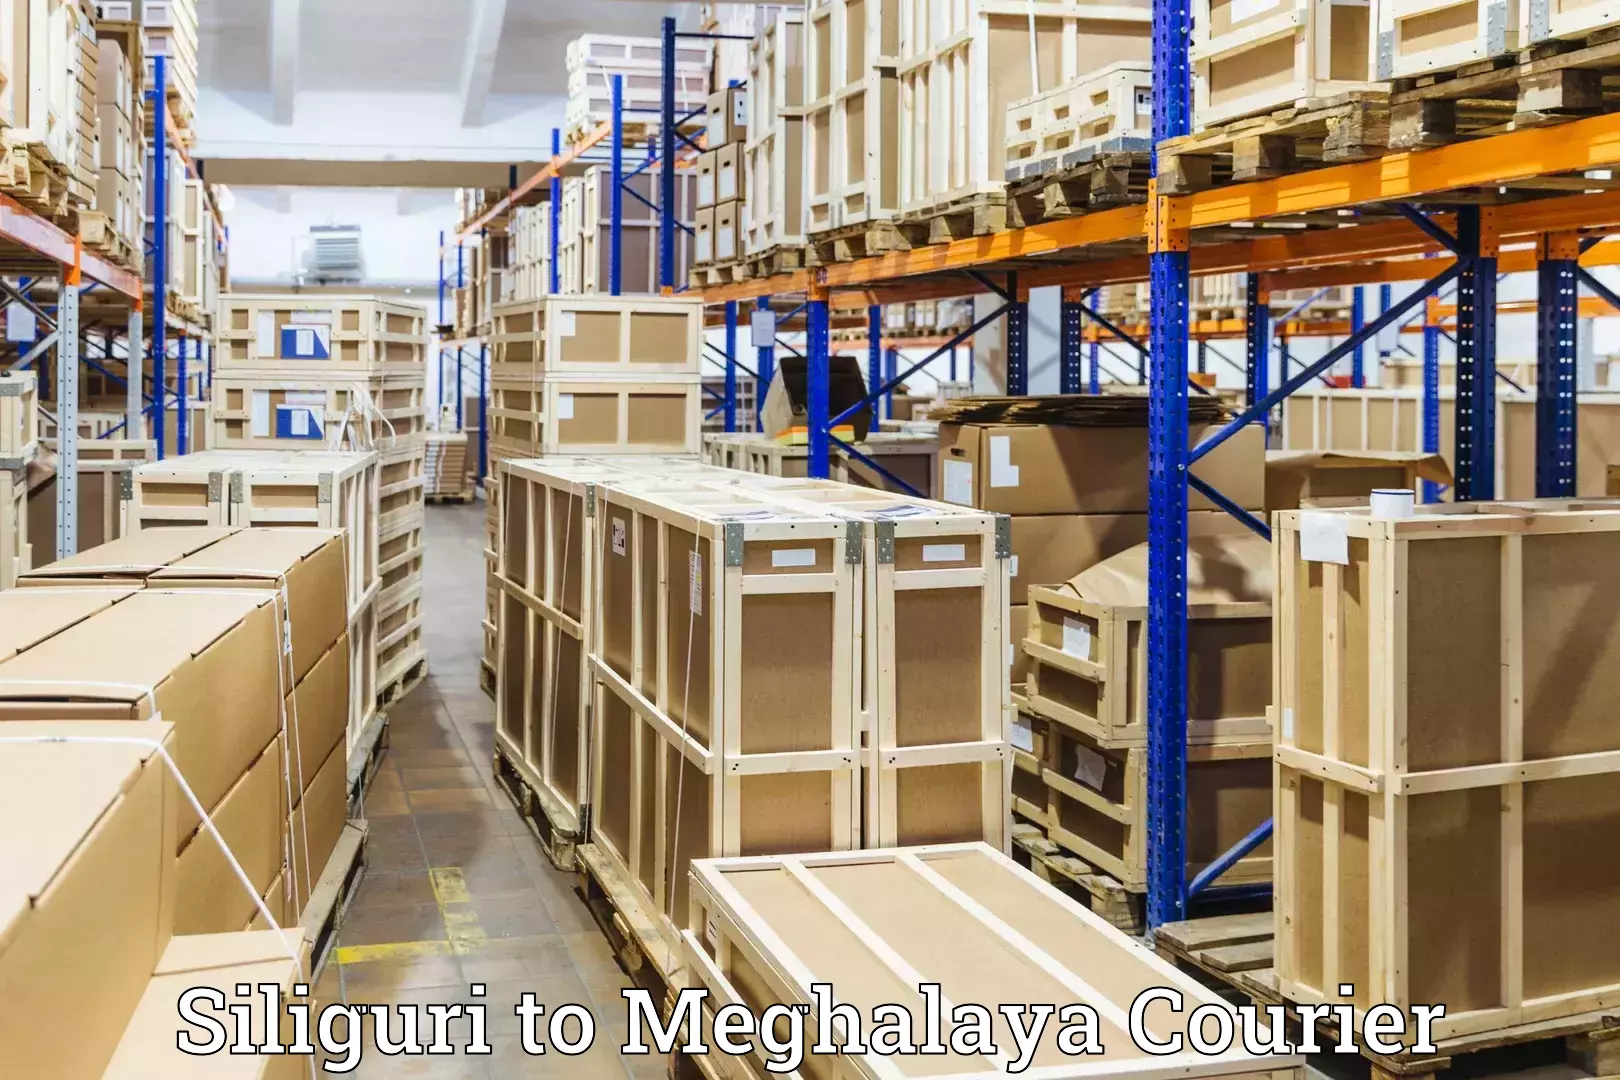 Baggage transport cost in Siliguri to Meghalaya